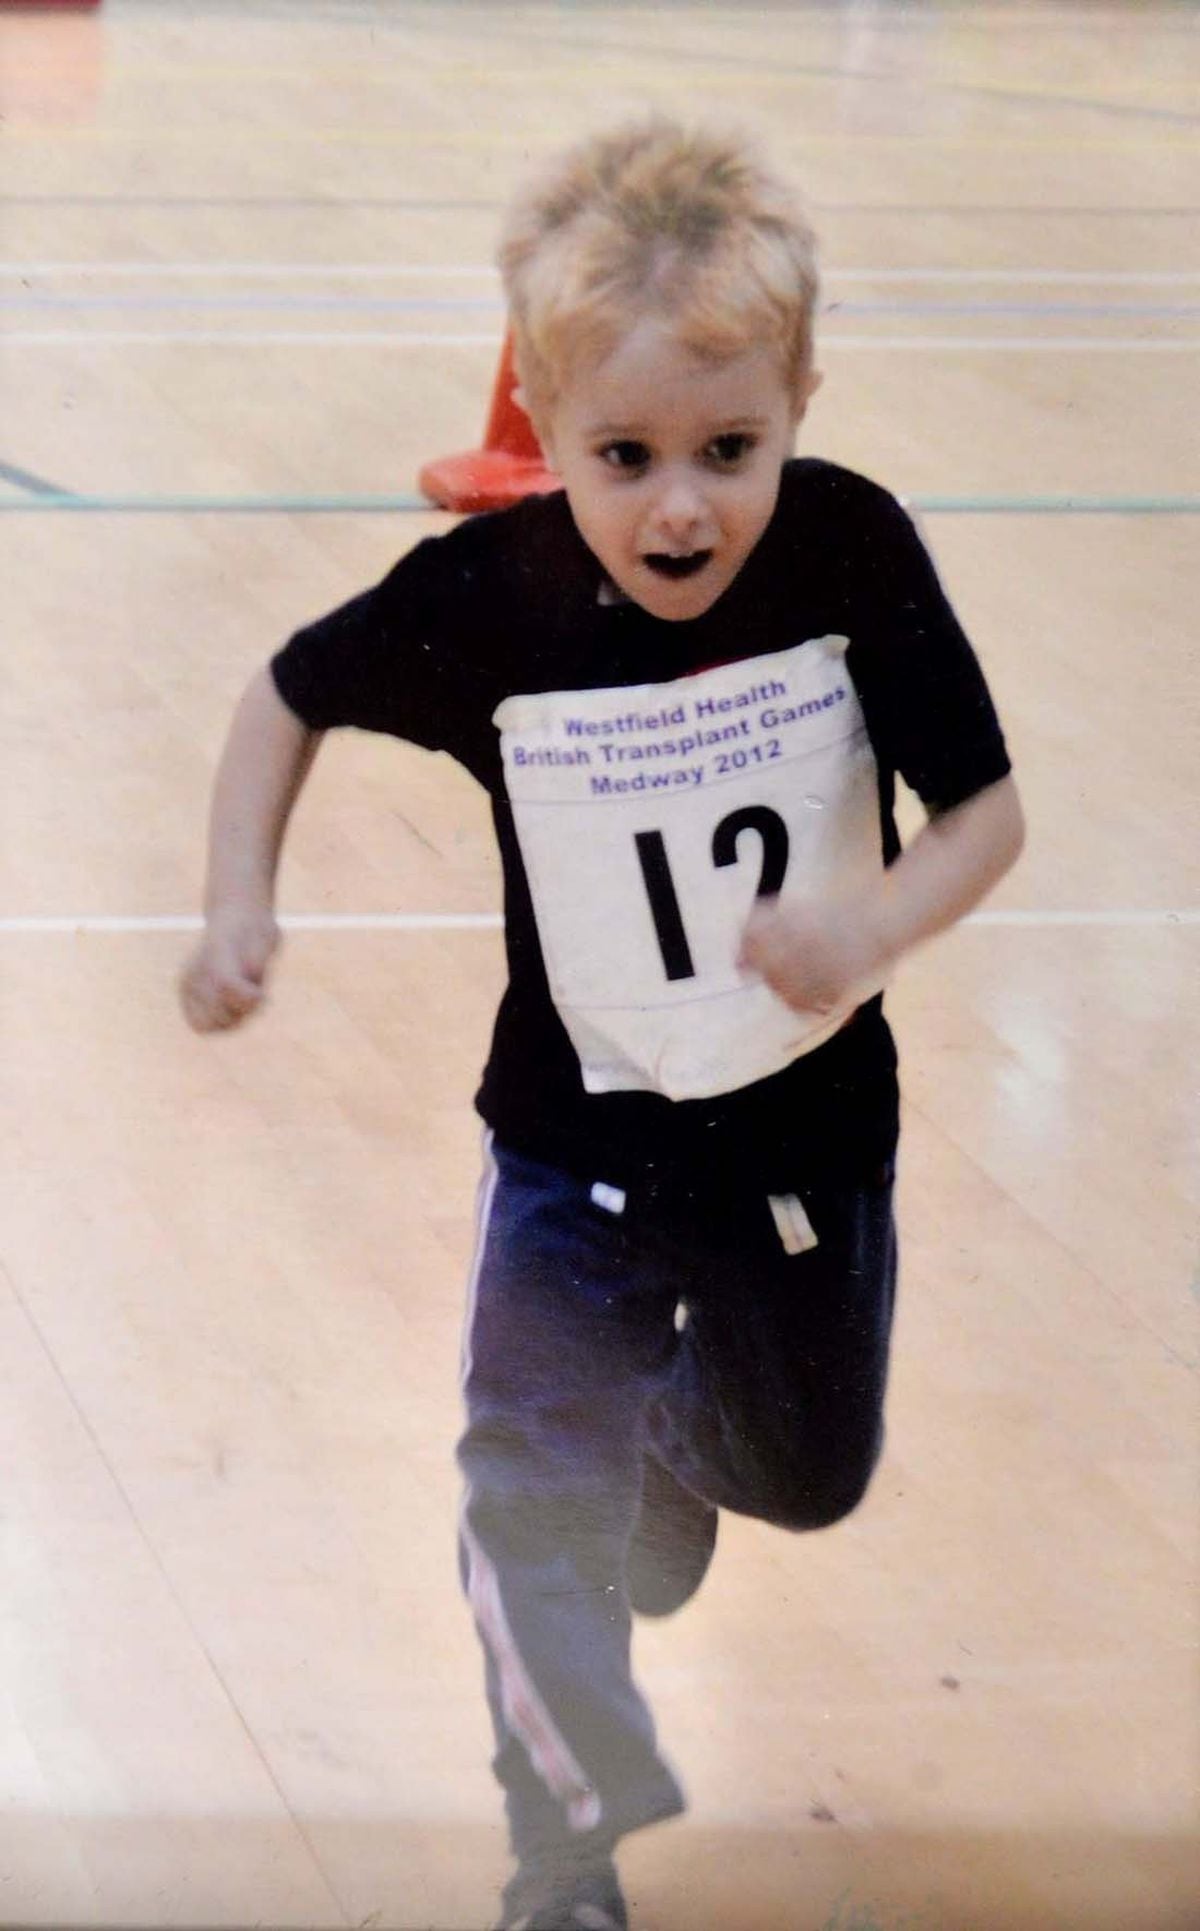 Kristof Polgar, then aged 4, taking part in a race in 2012